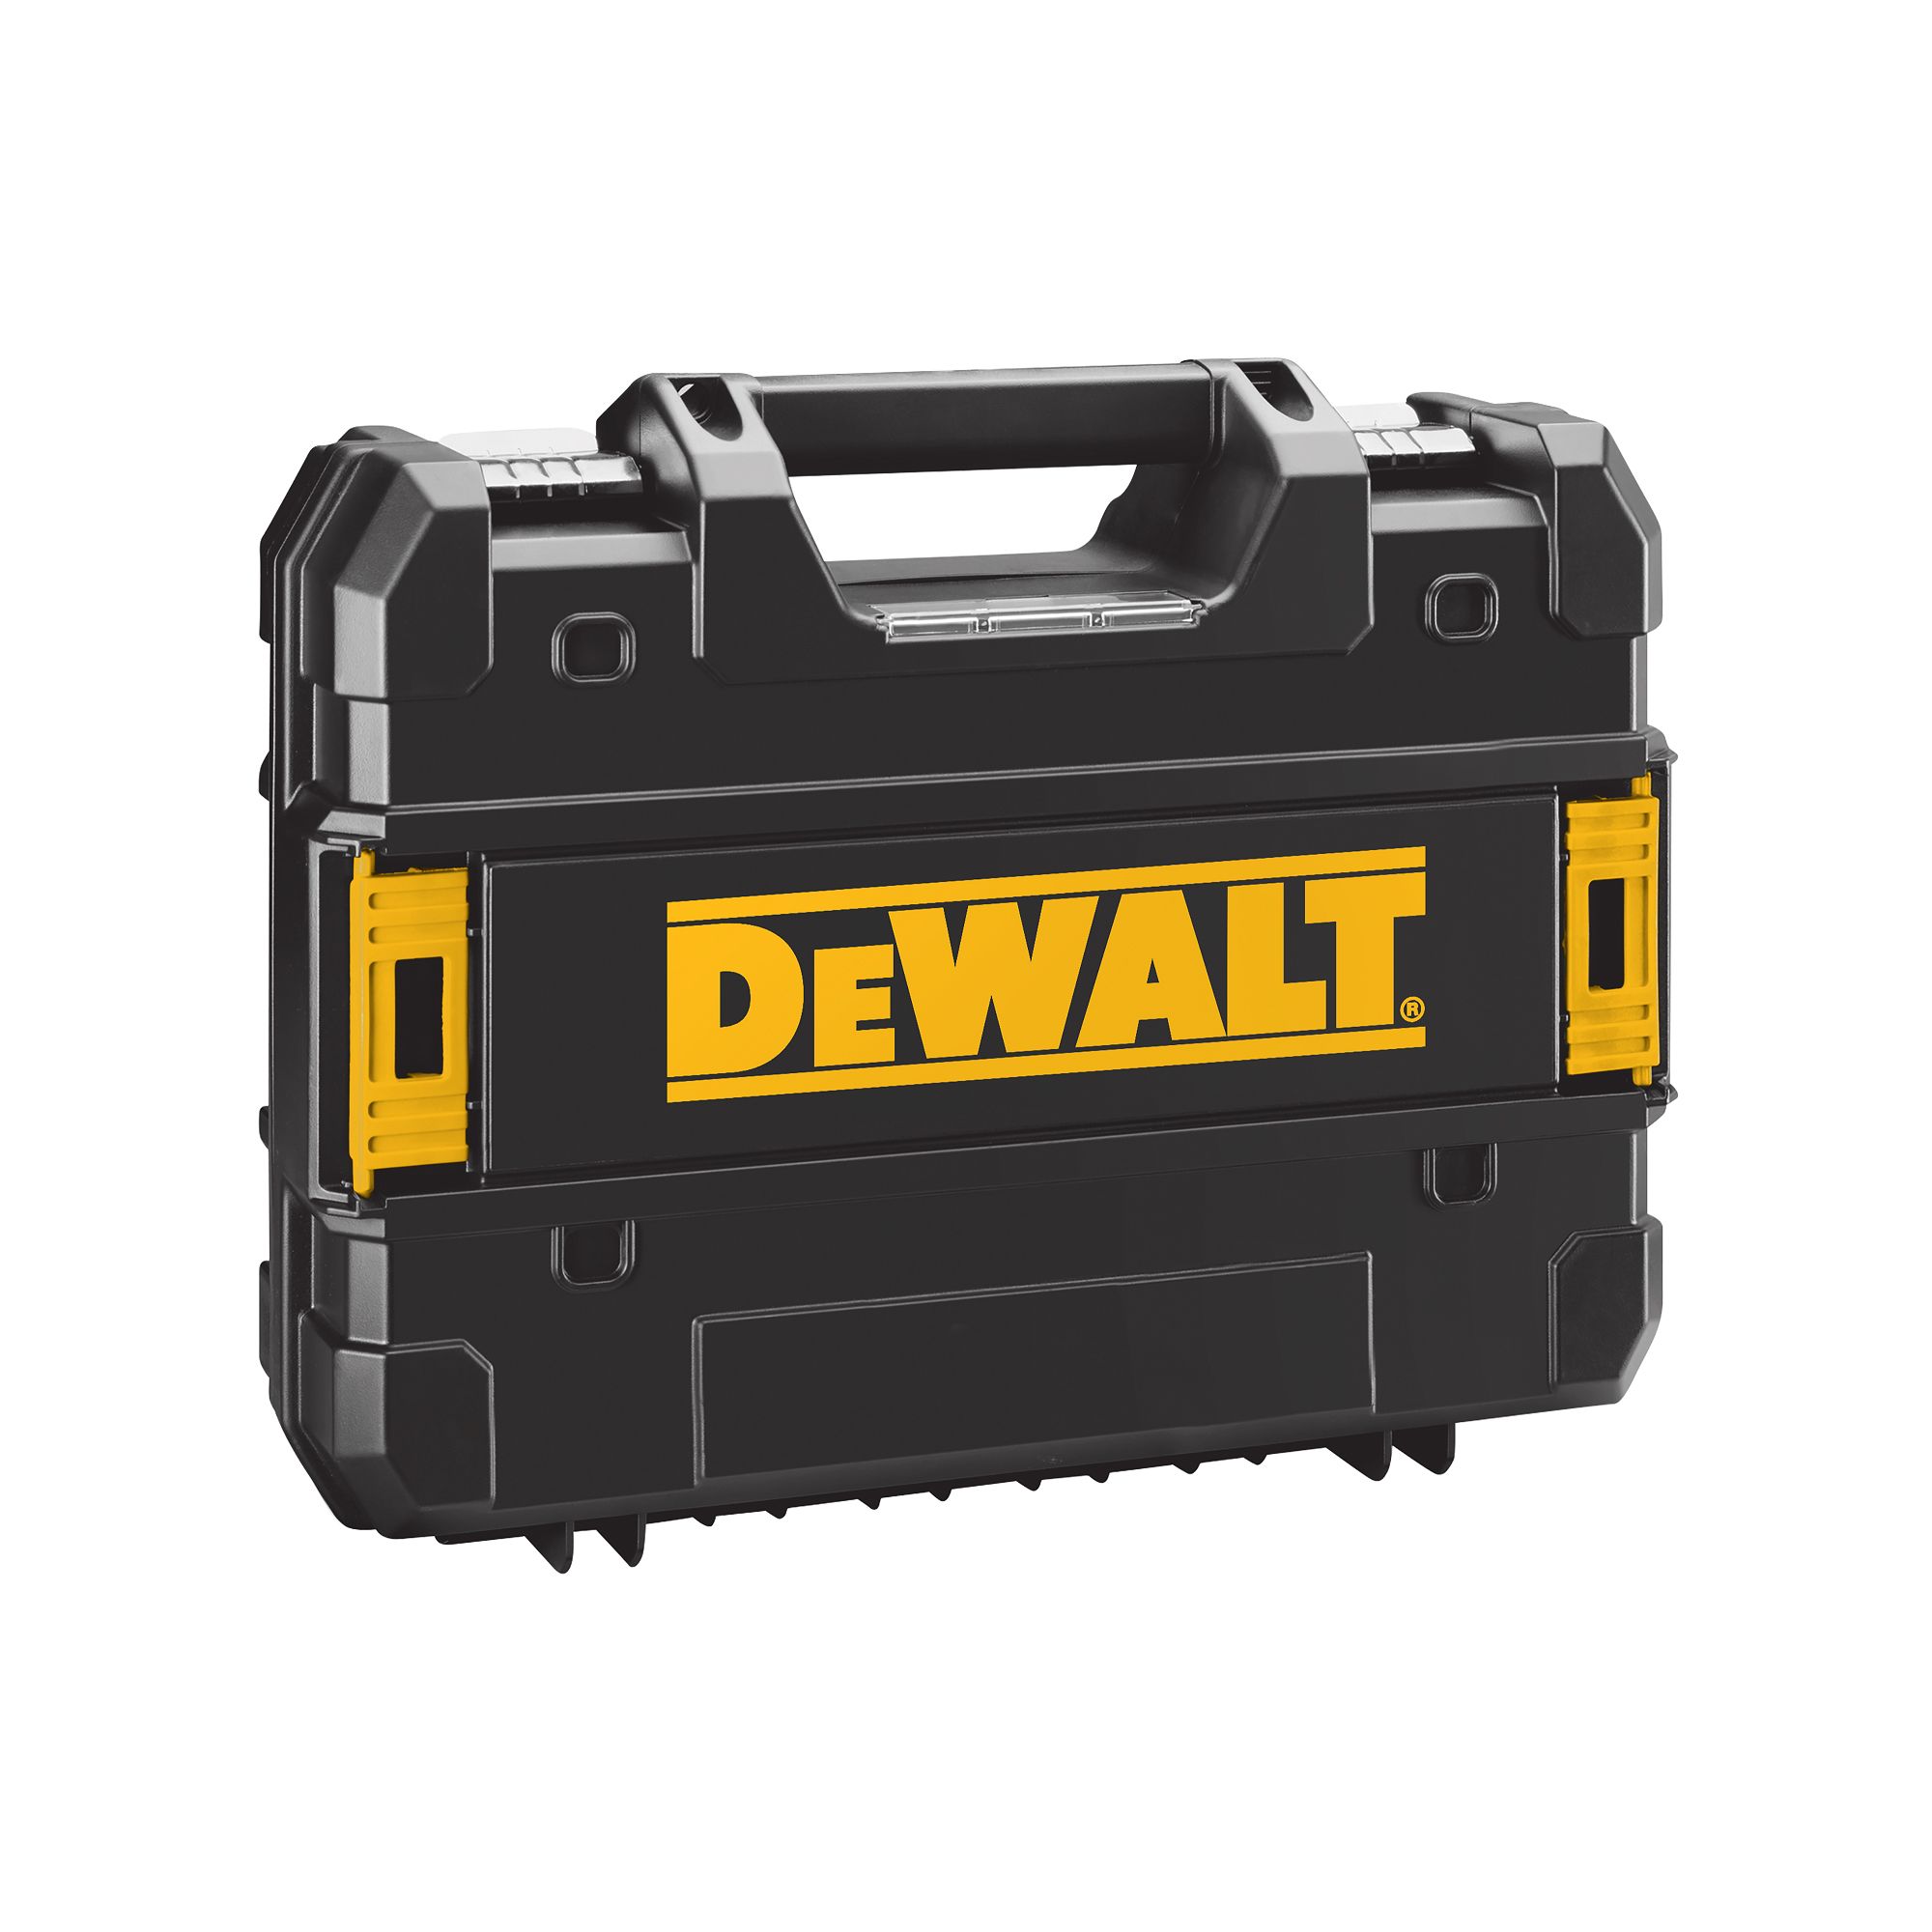 DeWalt 18V Li-ion Brushed Cordless Combi drill (1 x 2Ah) - DCD776D1T- GB